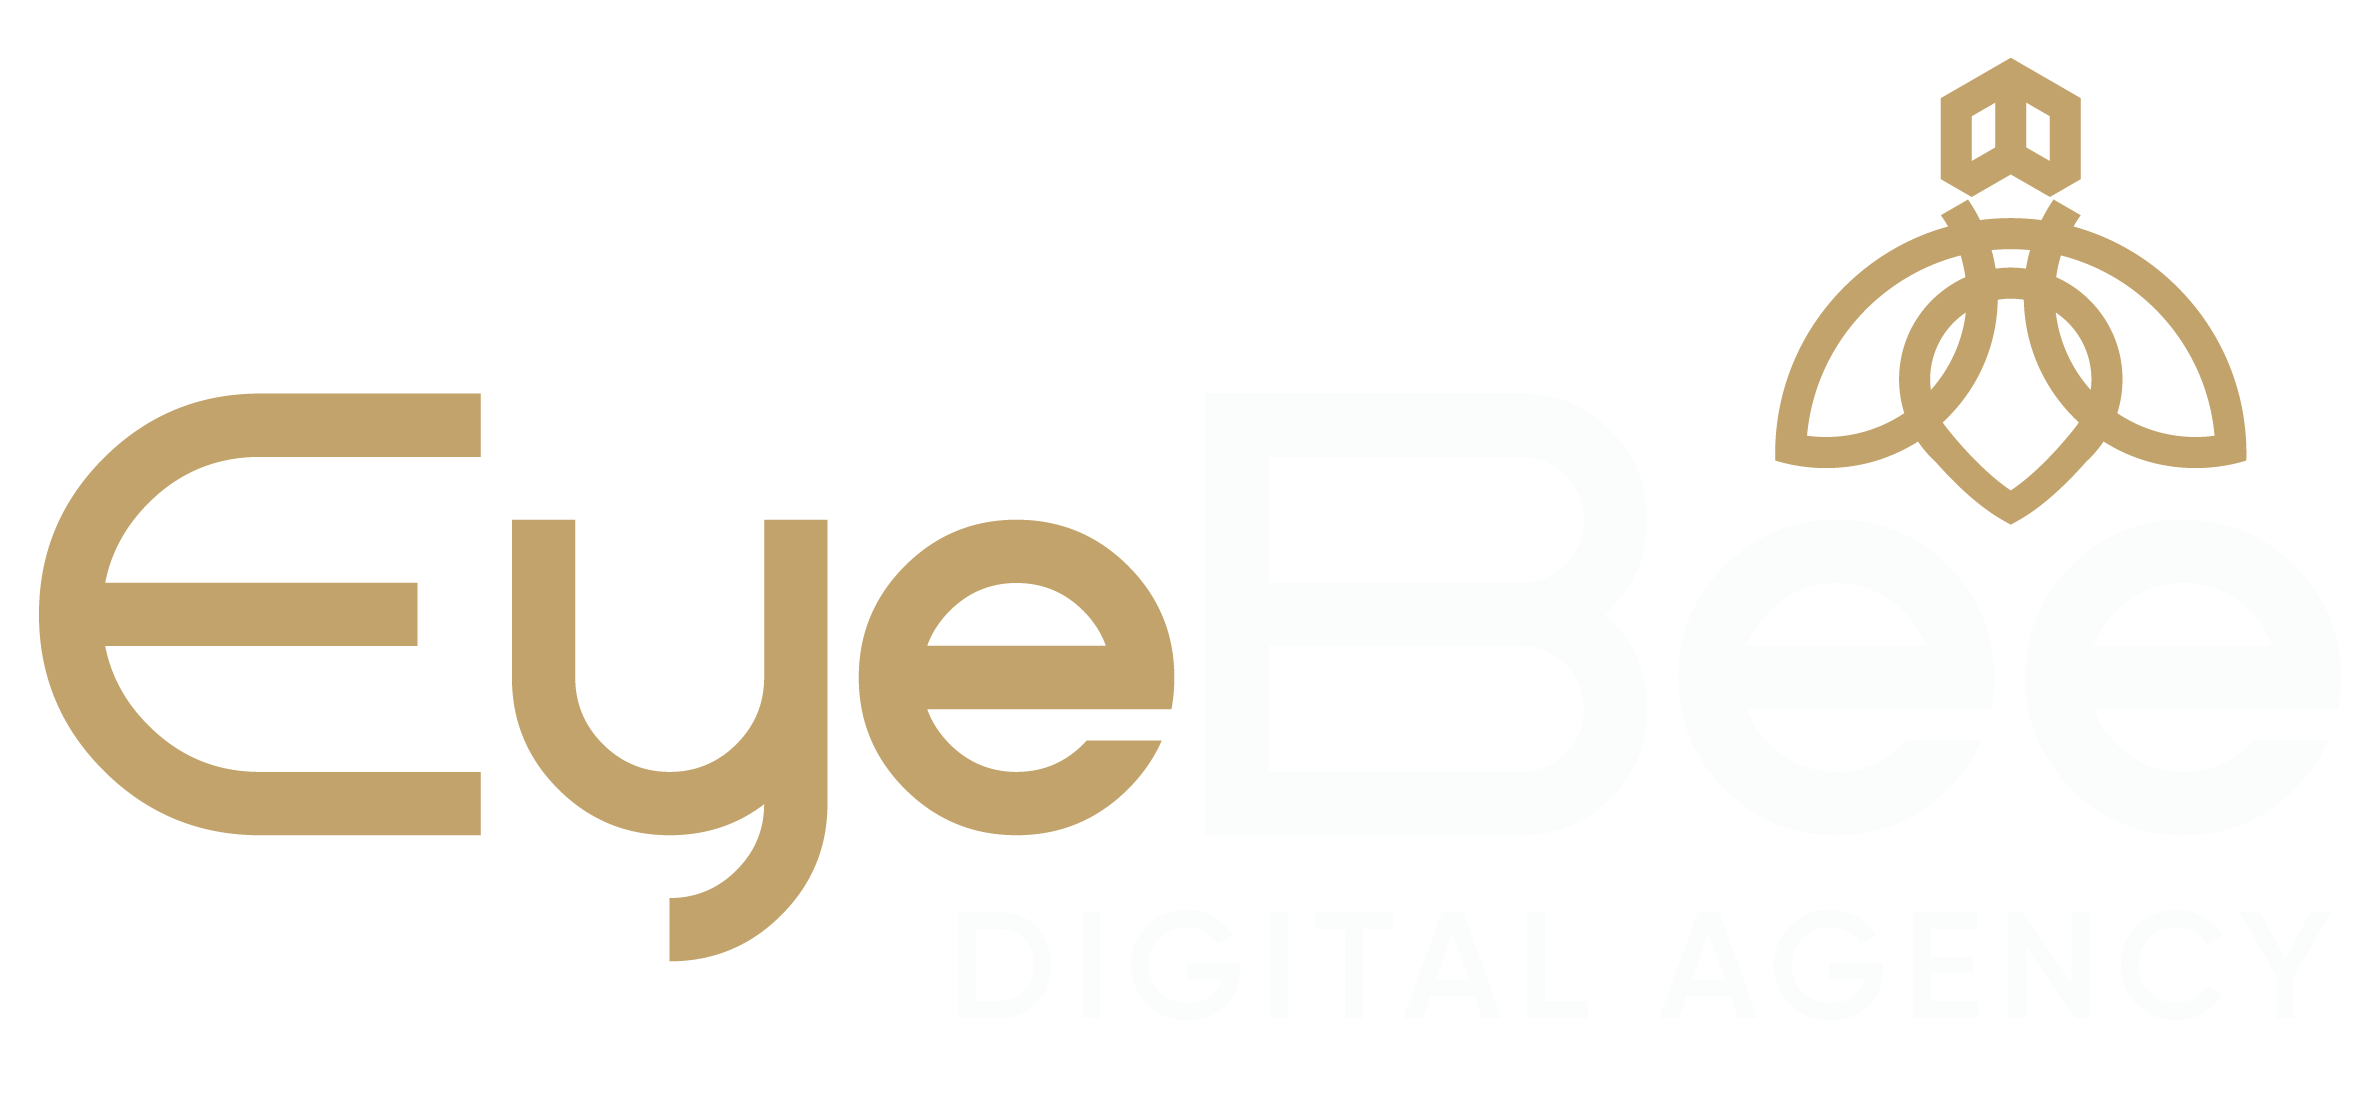 EyeBee Digital Agency